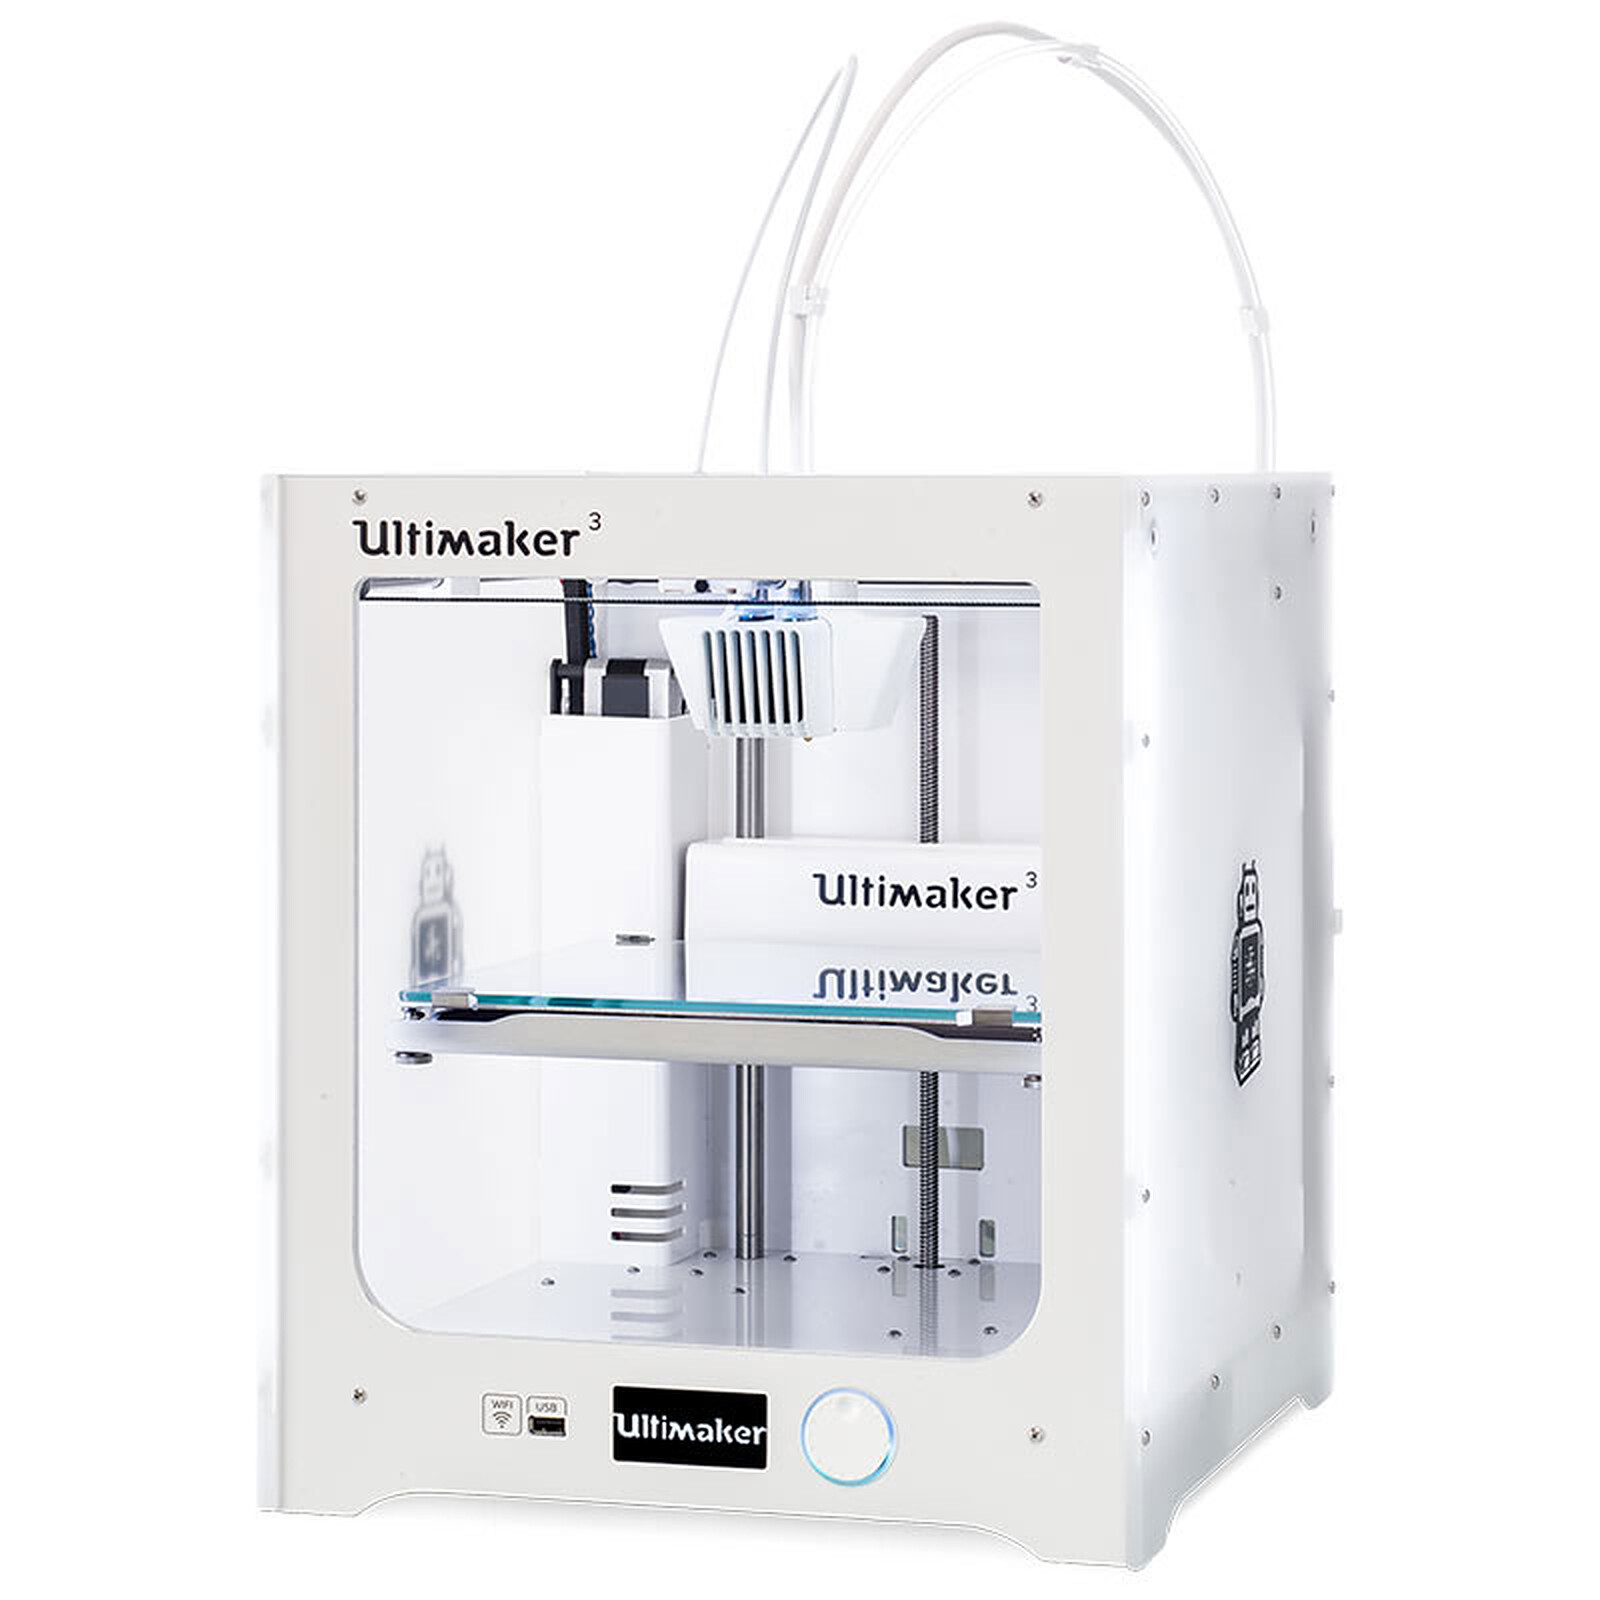 Ultimaker 3 Imprimante 3D couleur professionnelle /à 2 t/êtes dimpression compatible tous mat/ériaux Wi-Fi//Ethernet//USB Imprimante 3D